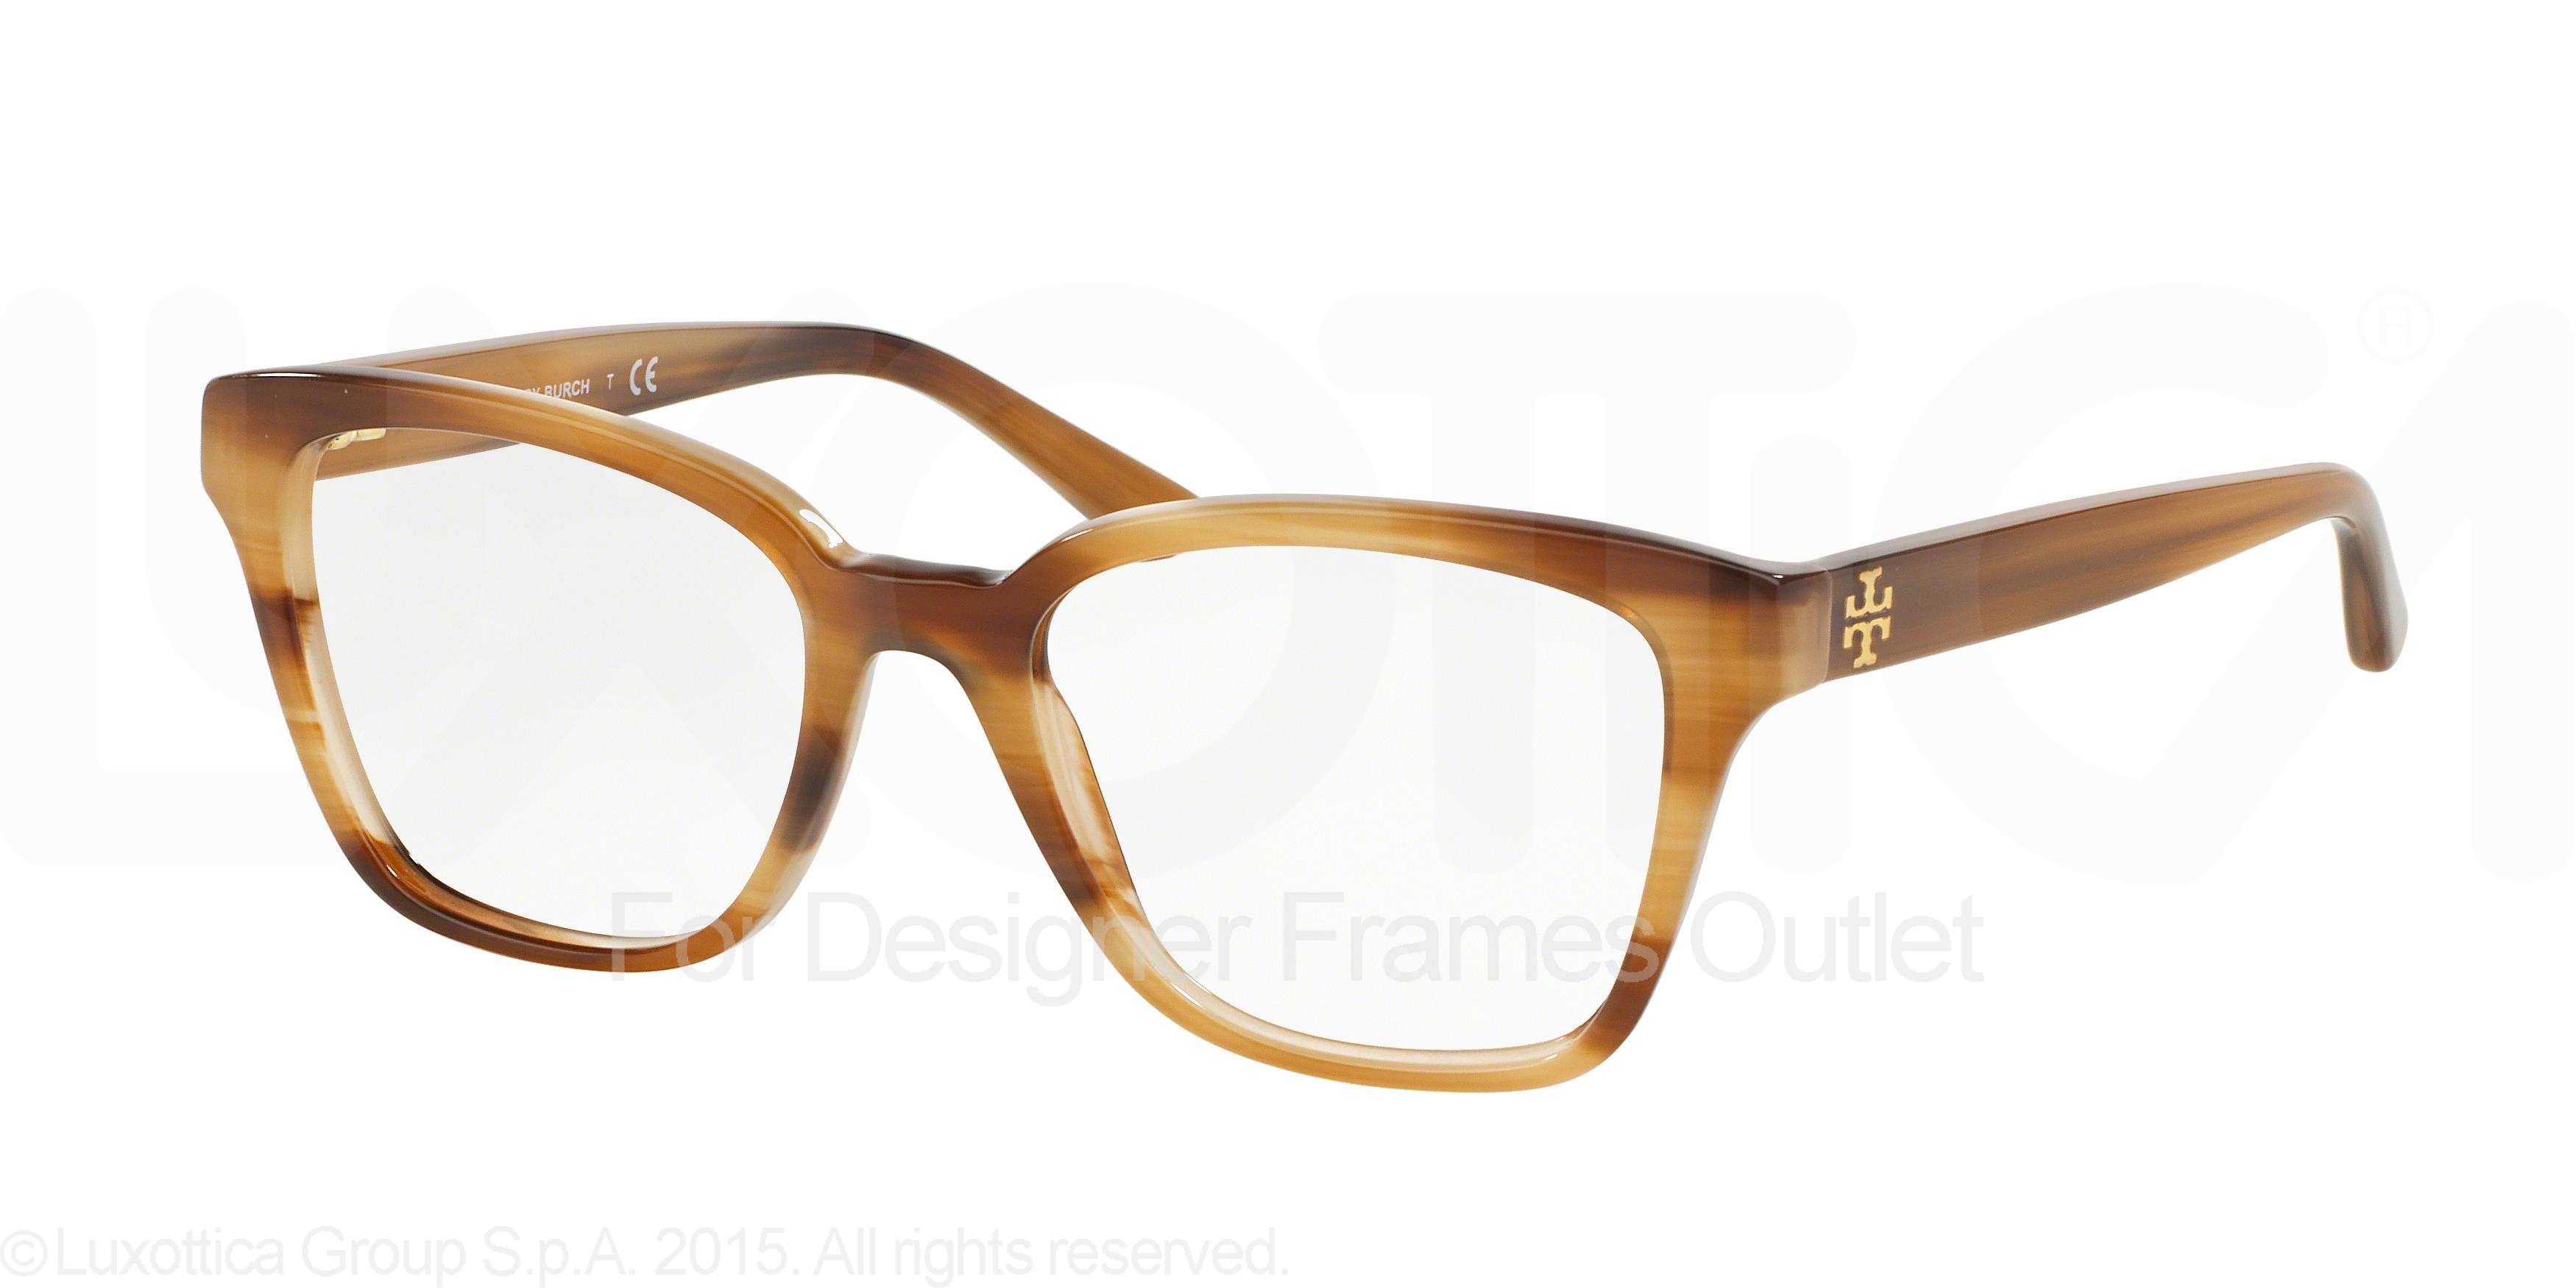 Designer Frames Outlet. Tory Burch Eyeglasses TY2052